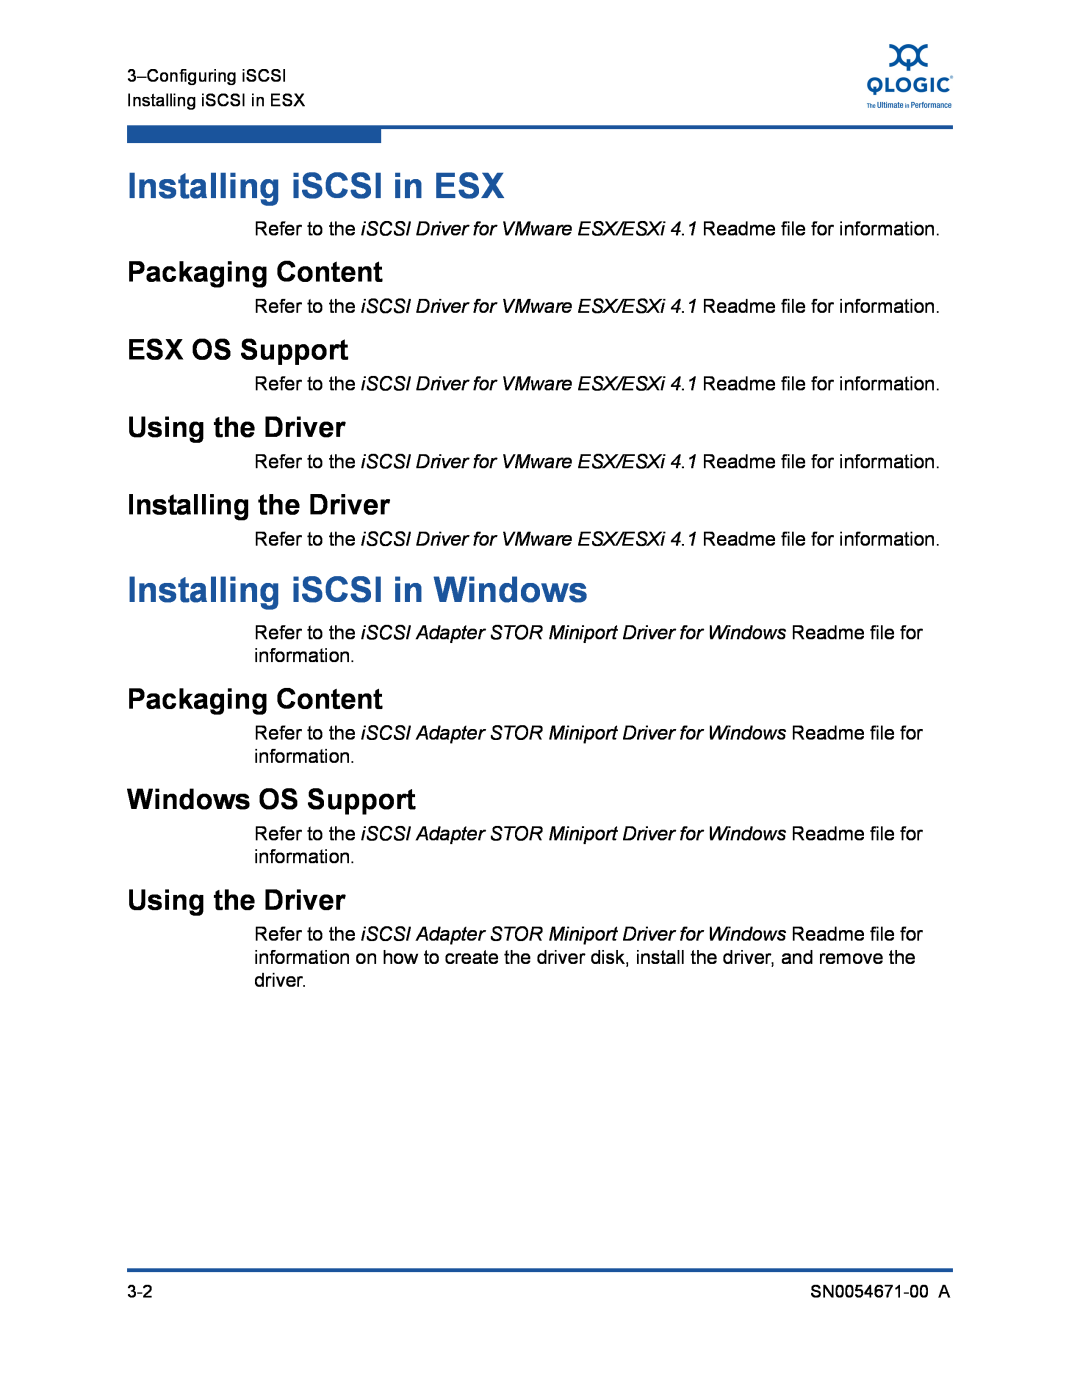 Q-Logic 8200, 3200 manual Installing iSCSI in ESX, Installing iSCSI in Windows, Installing the Driver, Packaging Content 